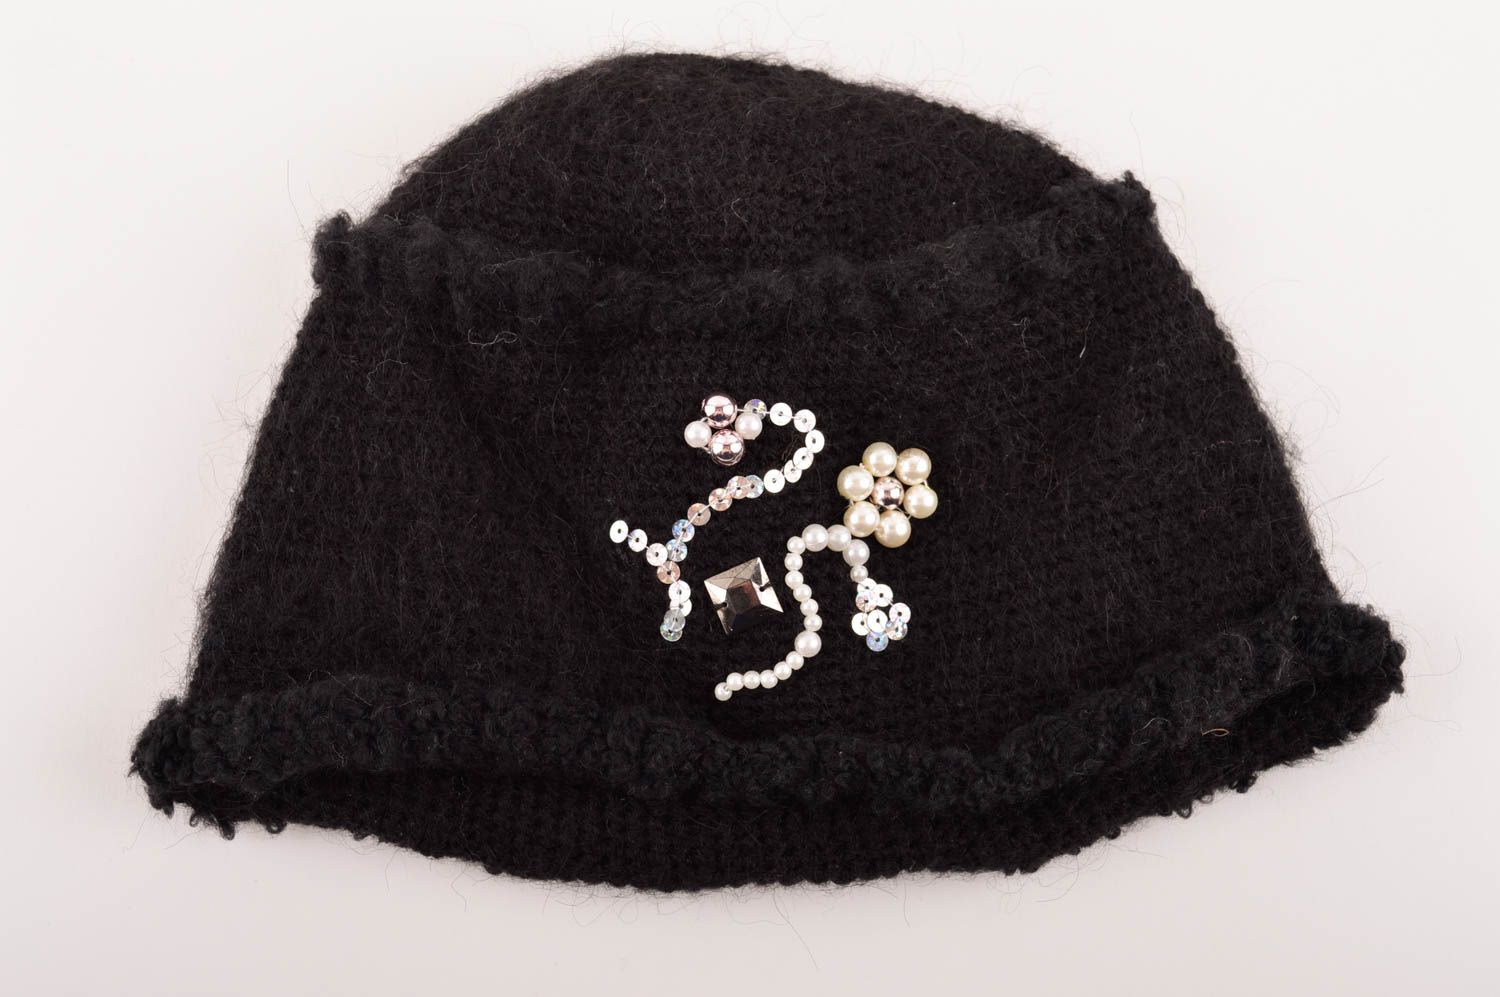 Mütze für Frauen schwarze Mütze modisches Accessoire Designer Handarbeit toll foto 5